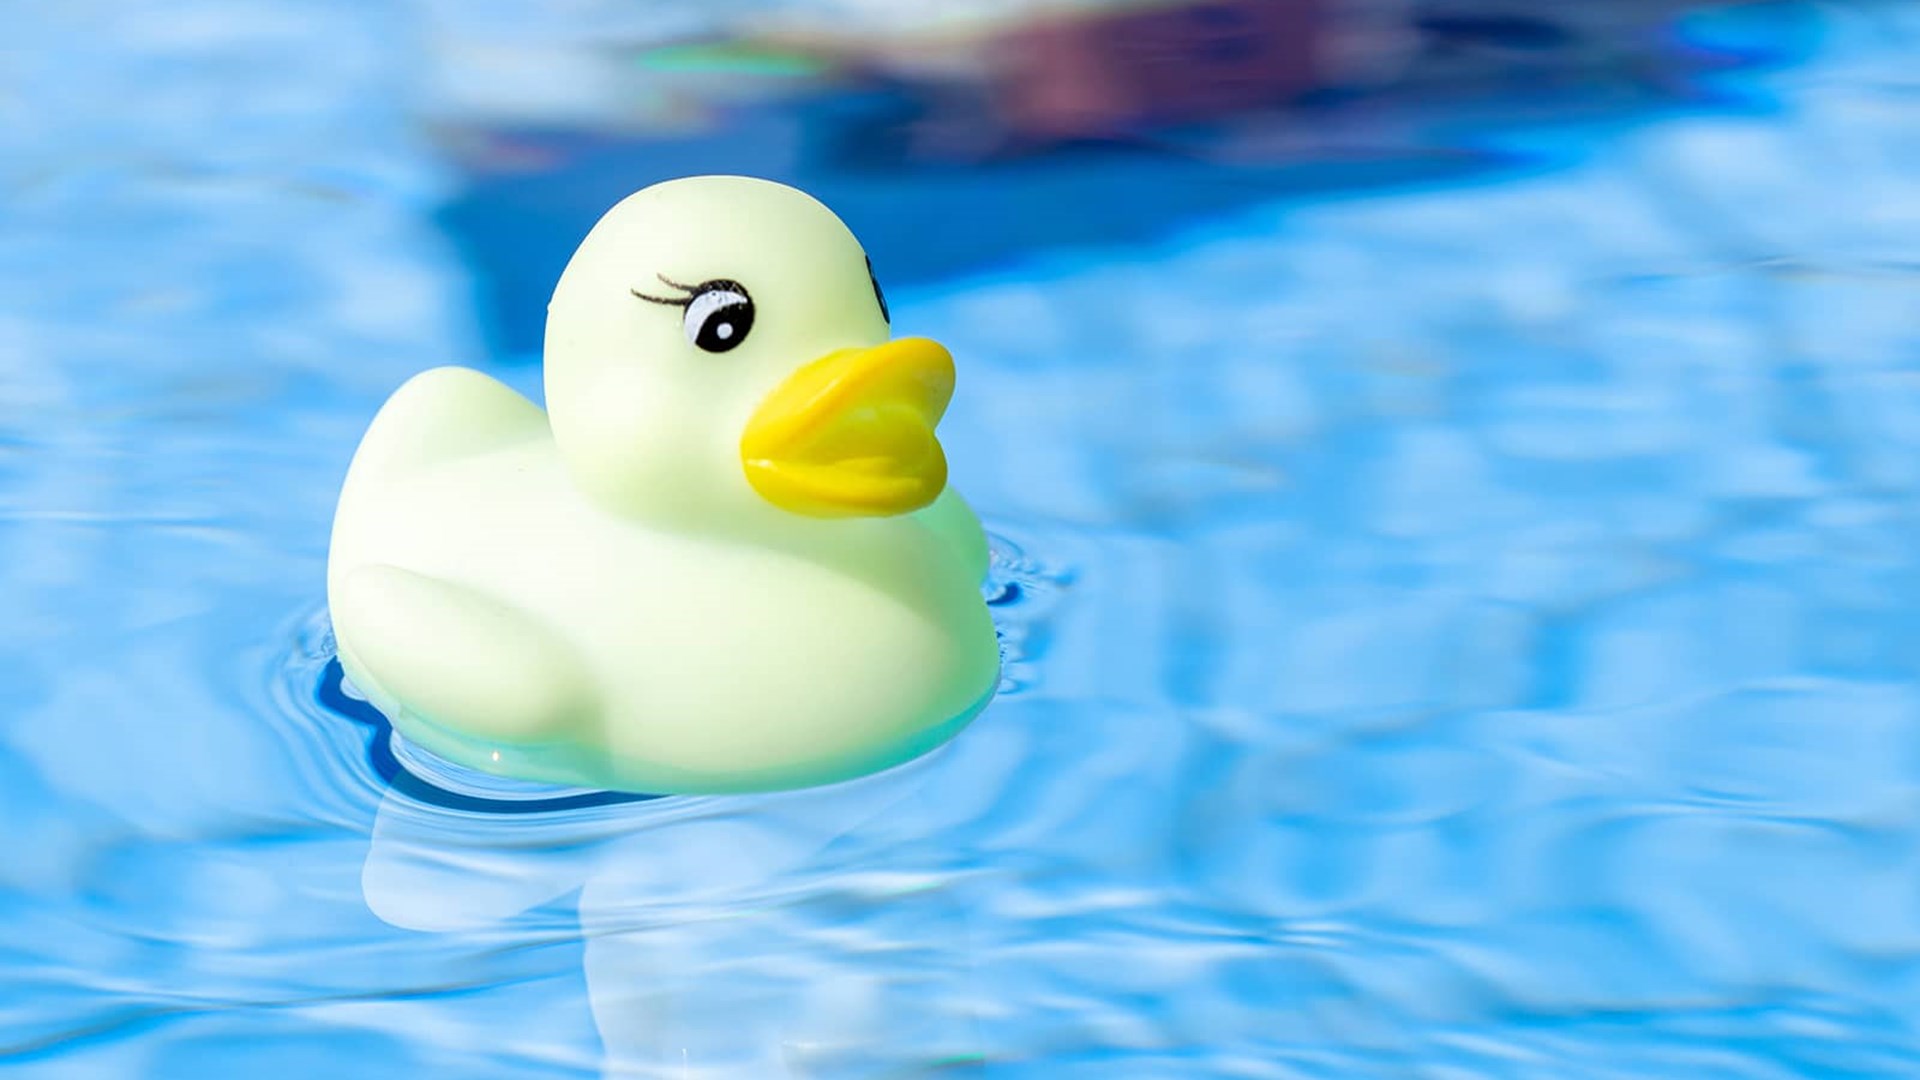 Gul badeand svømmer i vand. Hvad koster varmt vand ift. koldt vand? Hvad koster et brusebad - er det dyrere end karbad? 